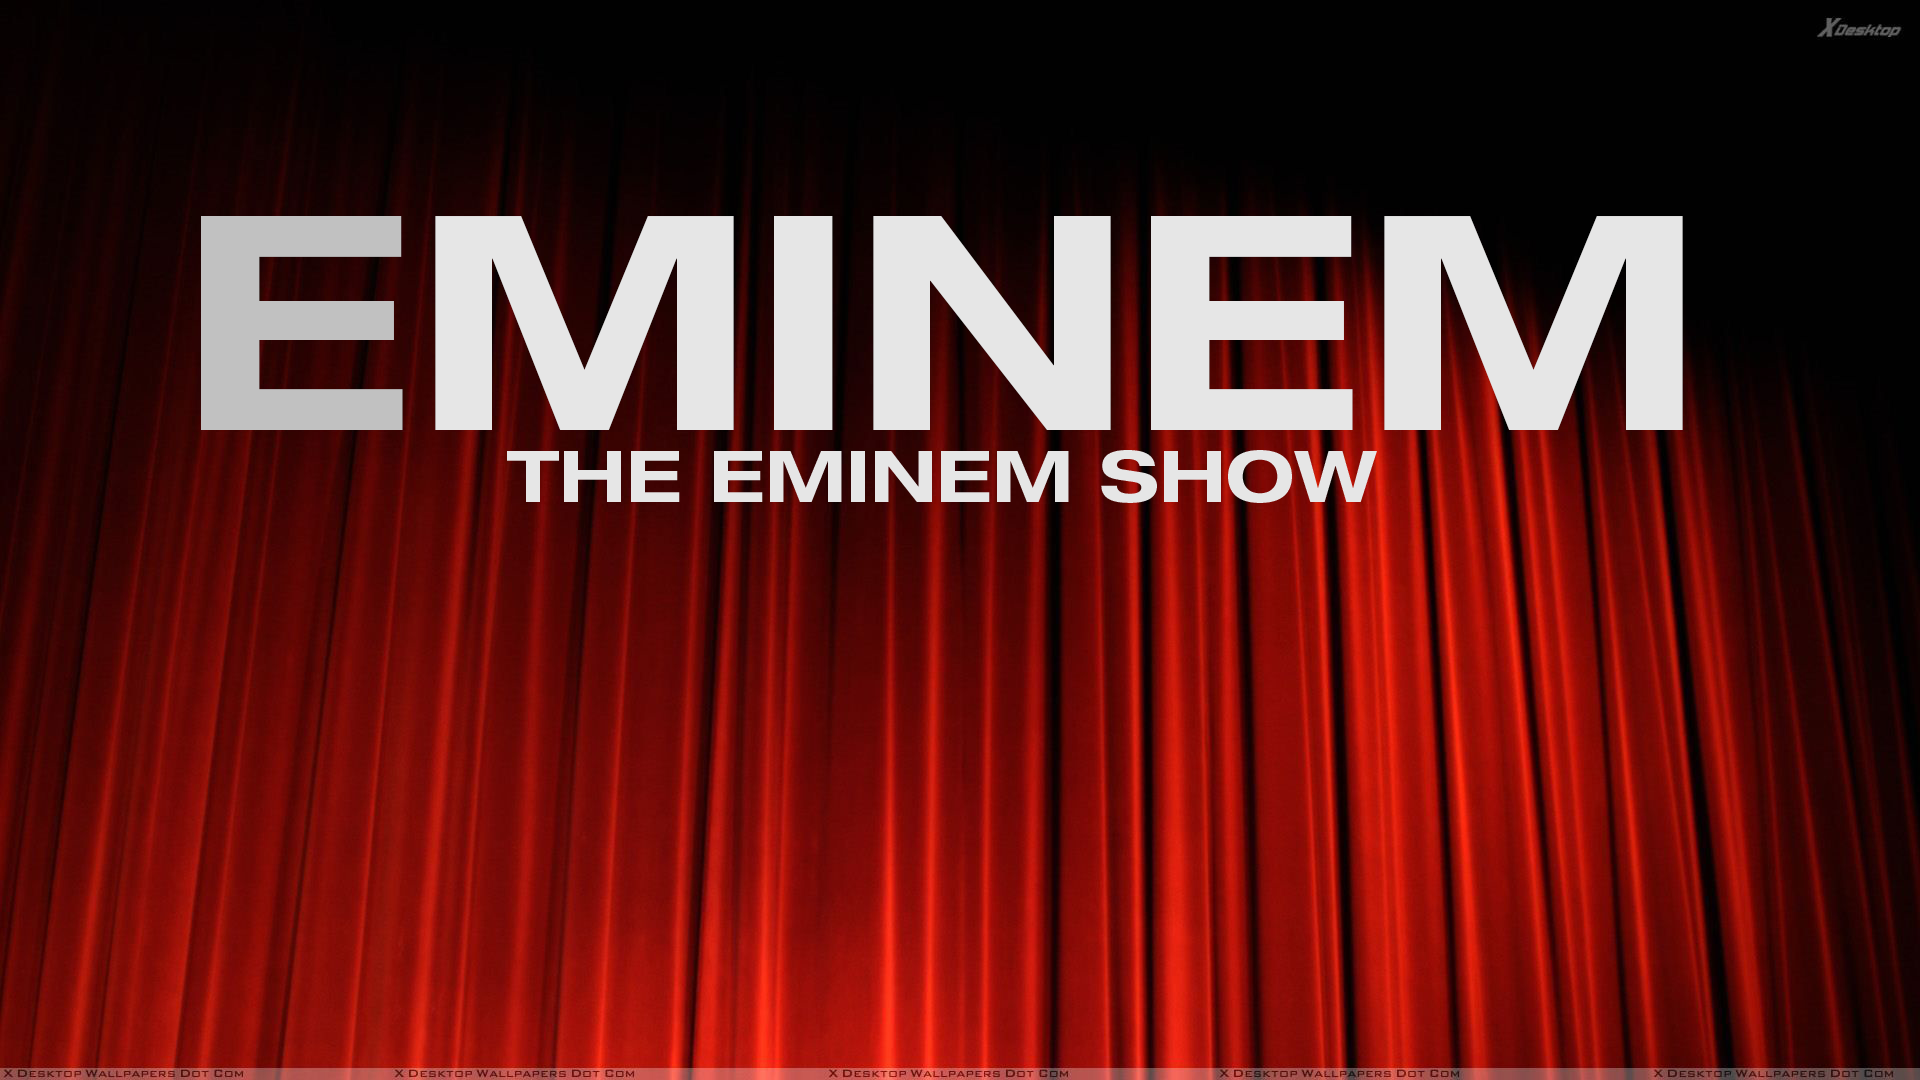 The Eminem show Spotify